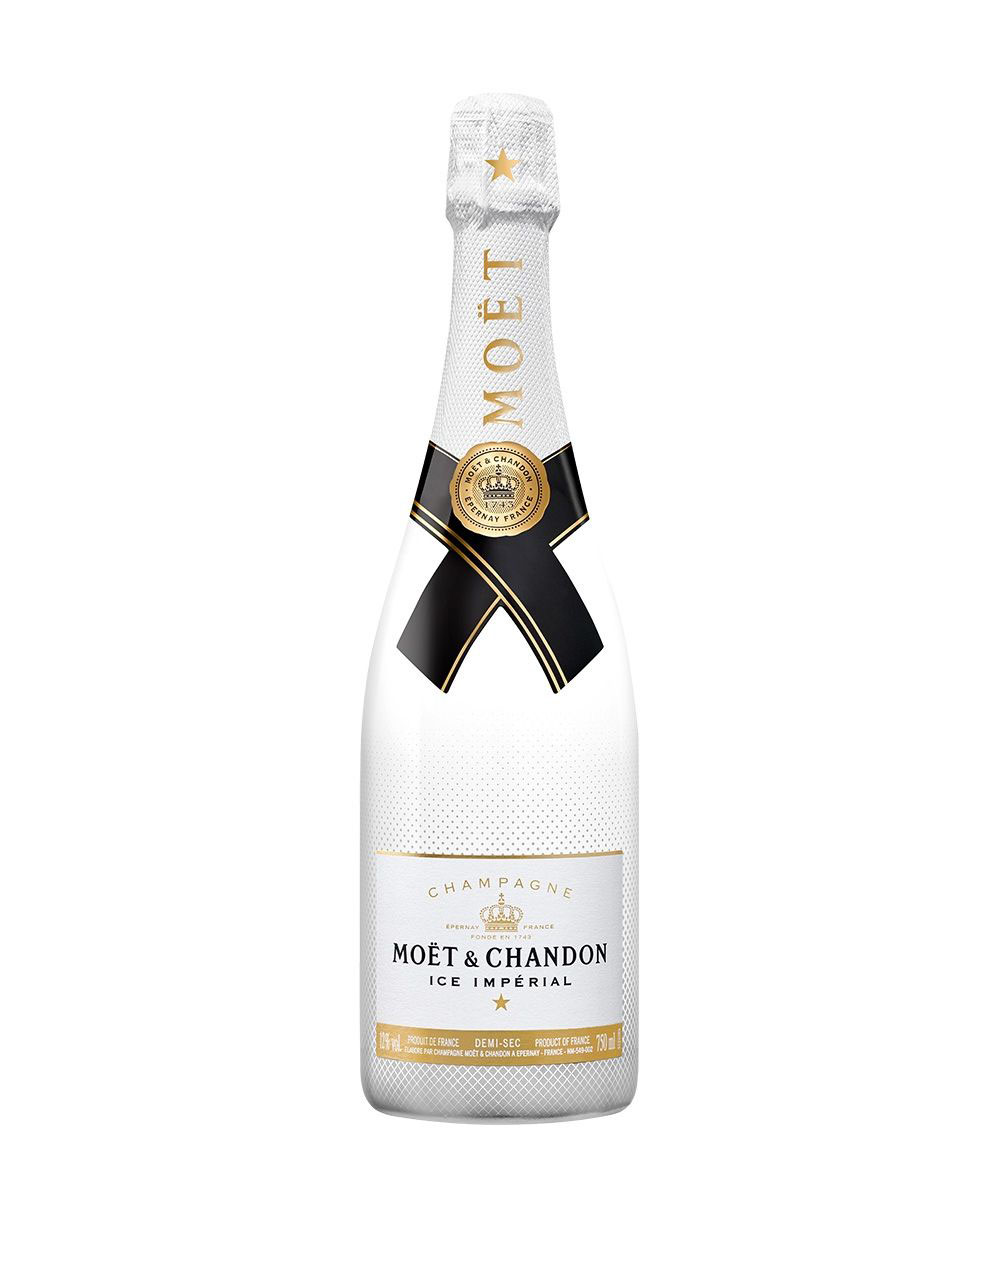 Veuve Clicquot Vintage Gold Label Brut Champagne 2012 - Bottle Hampton